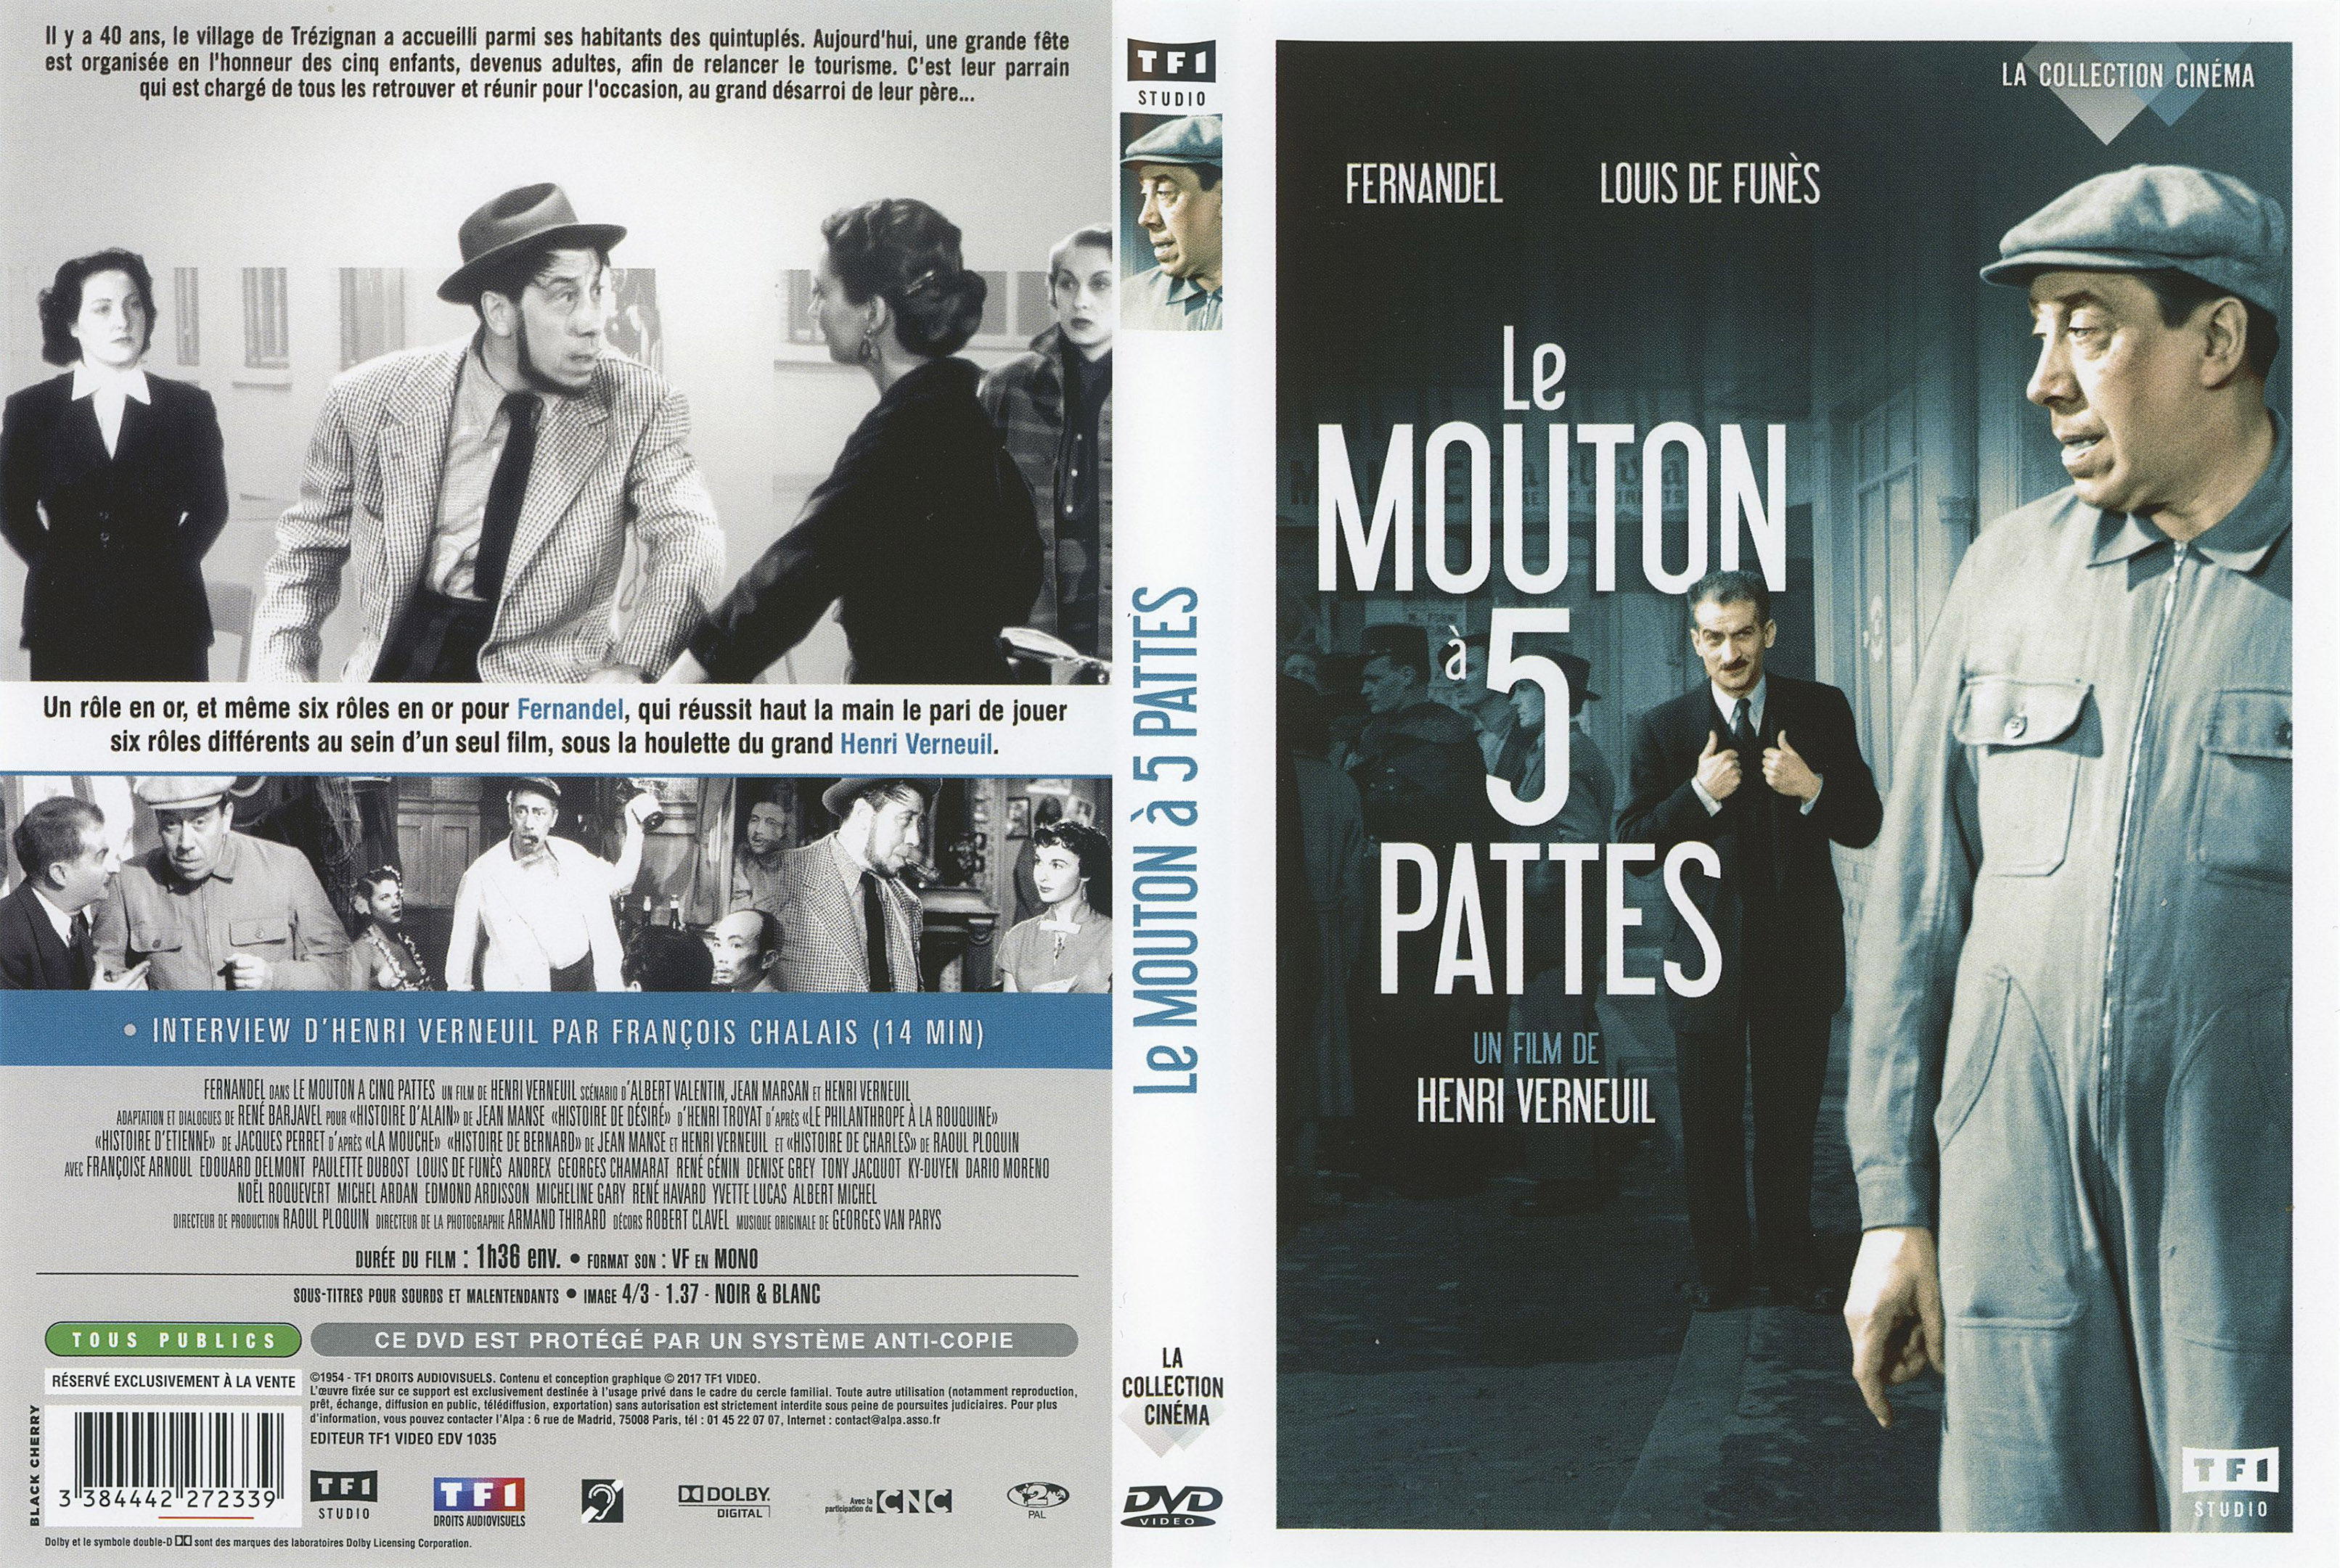 Jaquette DVD Le mouton a 5 pattes v2